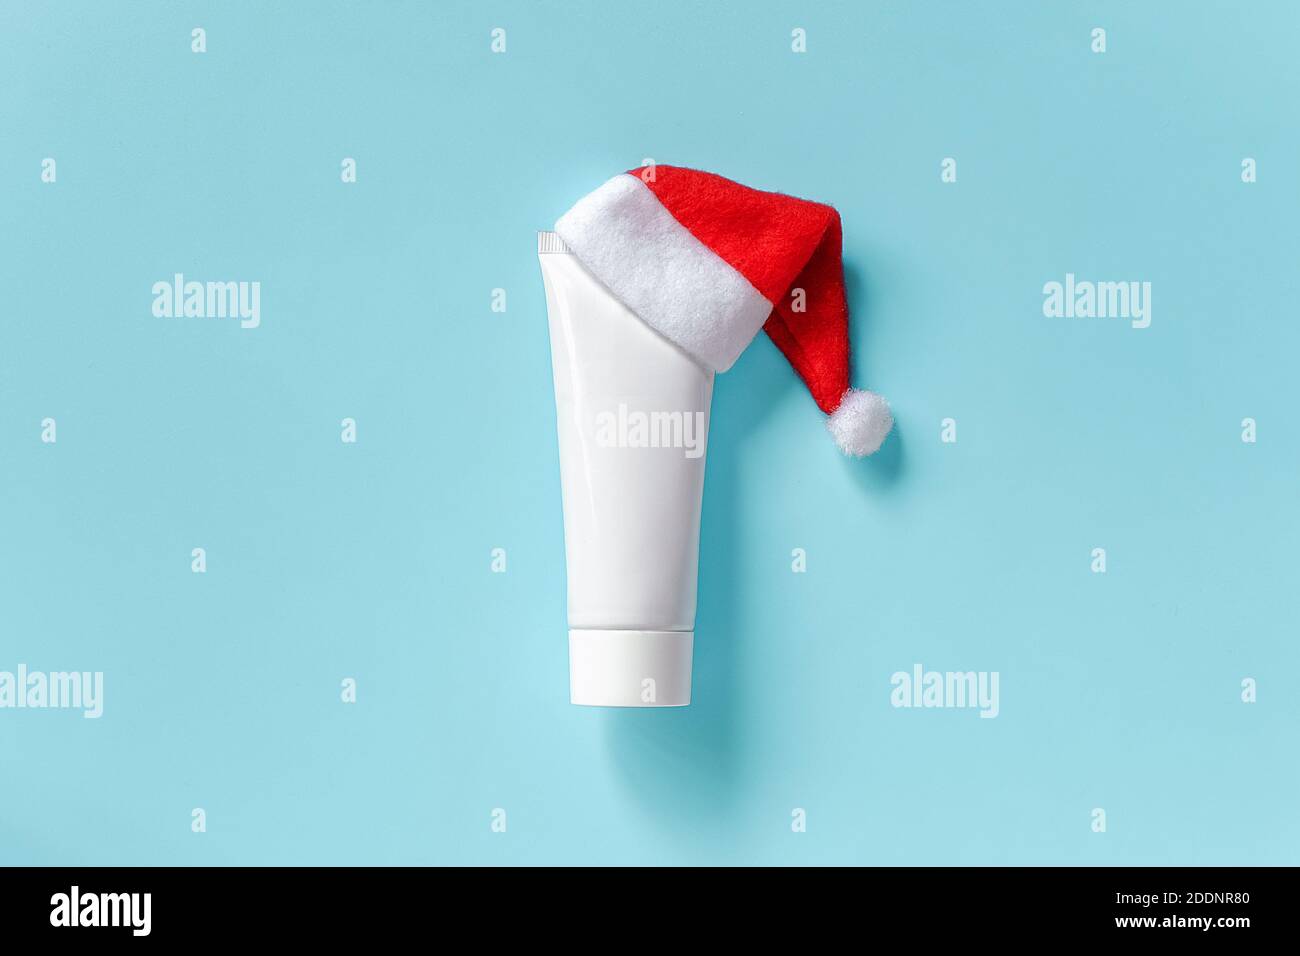 Tube blanc médical cosmétique pour crème, onguent ou autre produit en  chapeau rouge de Père Noël sur fond bleu. Concept hiver soins de la peau et du  corps ou Noël Photo Stock -